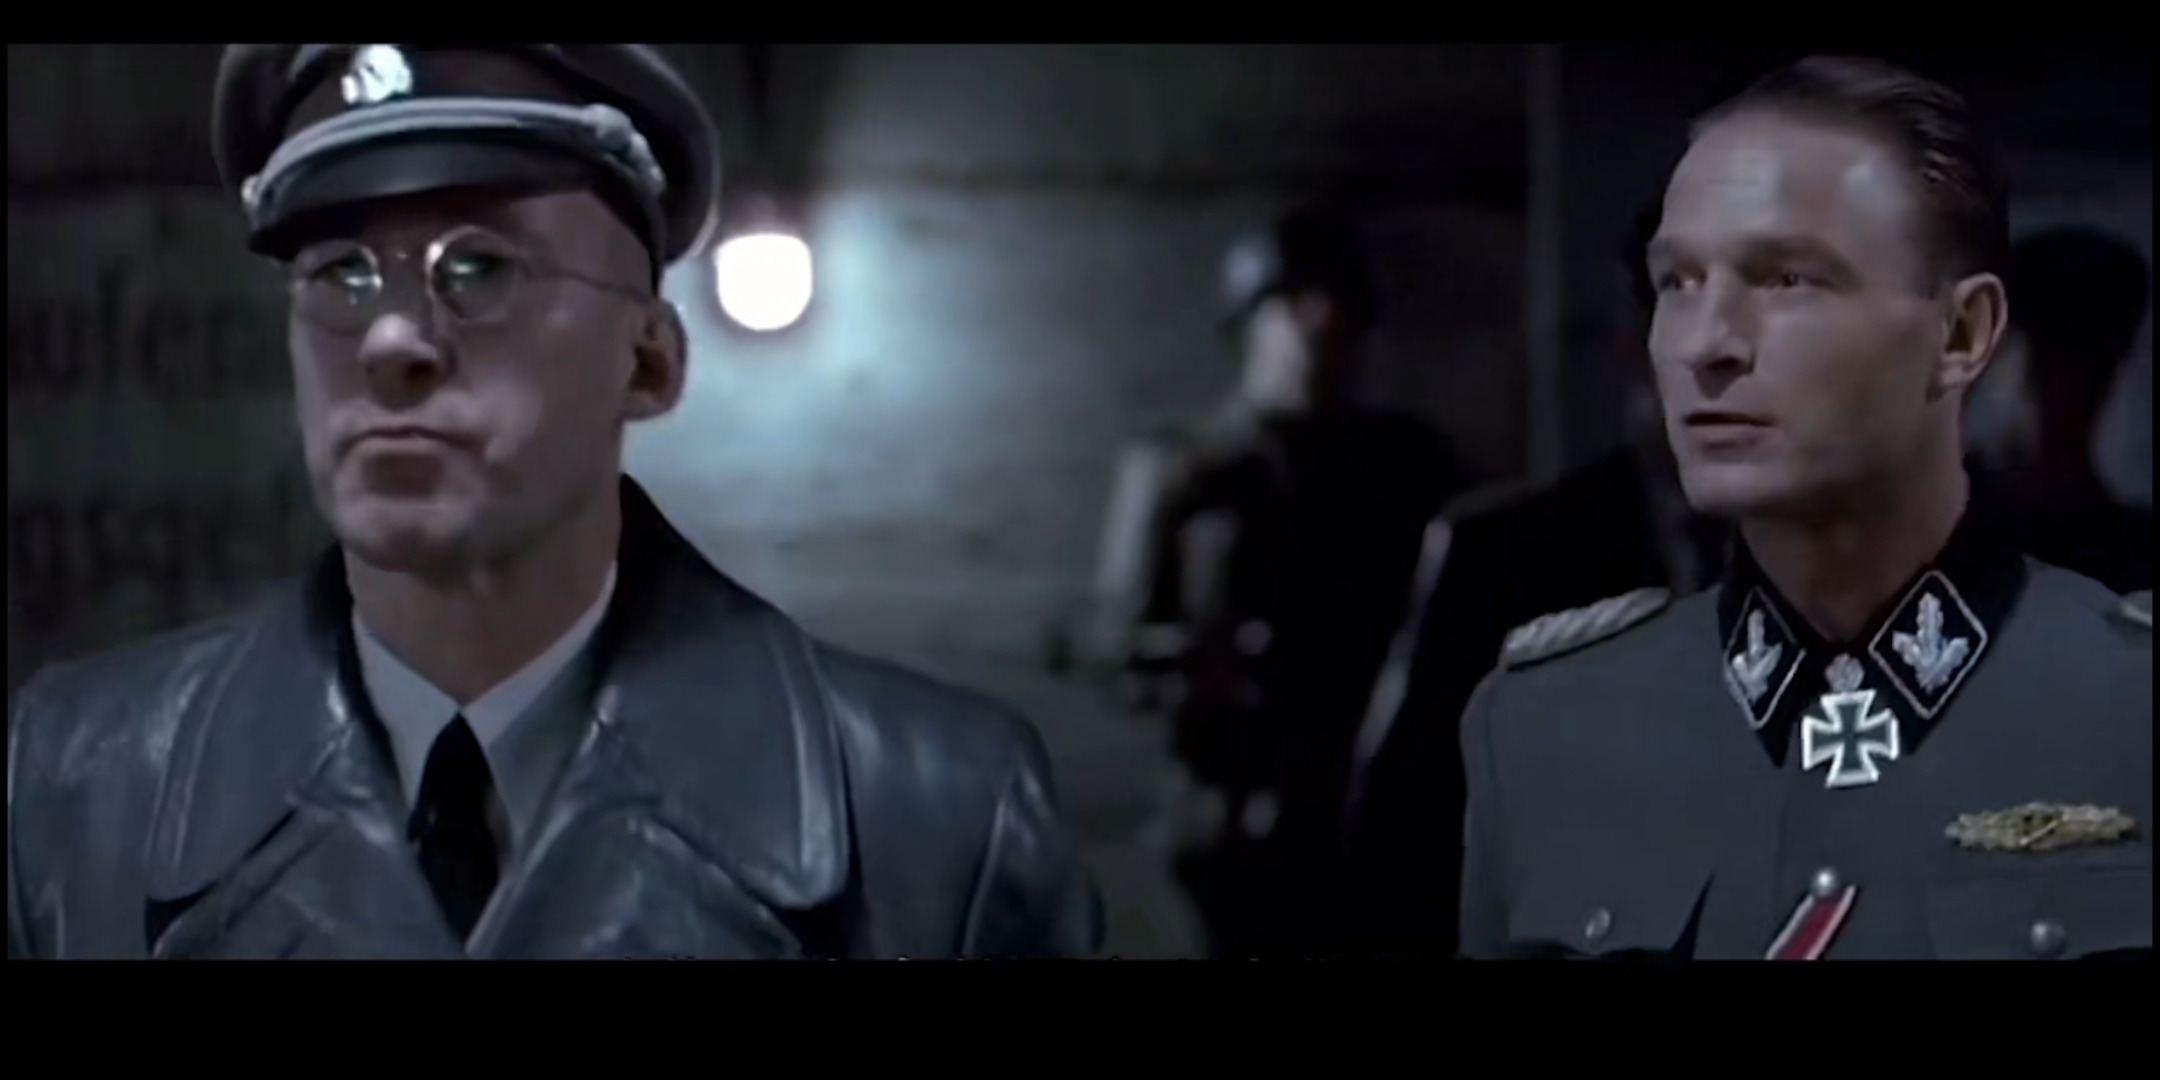 只有真正的德国人才能演出真正的德国人，而德国演员托马斯·克莱舒曼就是一个典型的例子，他在多部电影中饰演德国军官，我认为他把他所饰演的德国军官演活了！